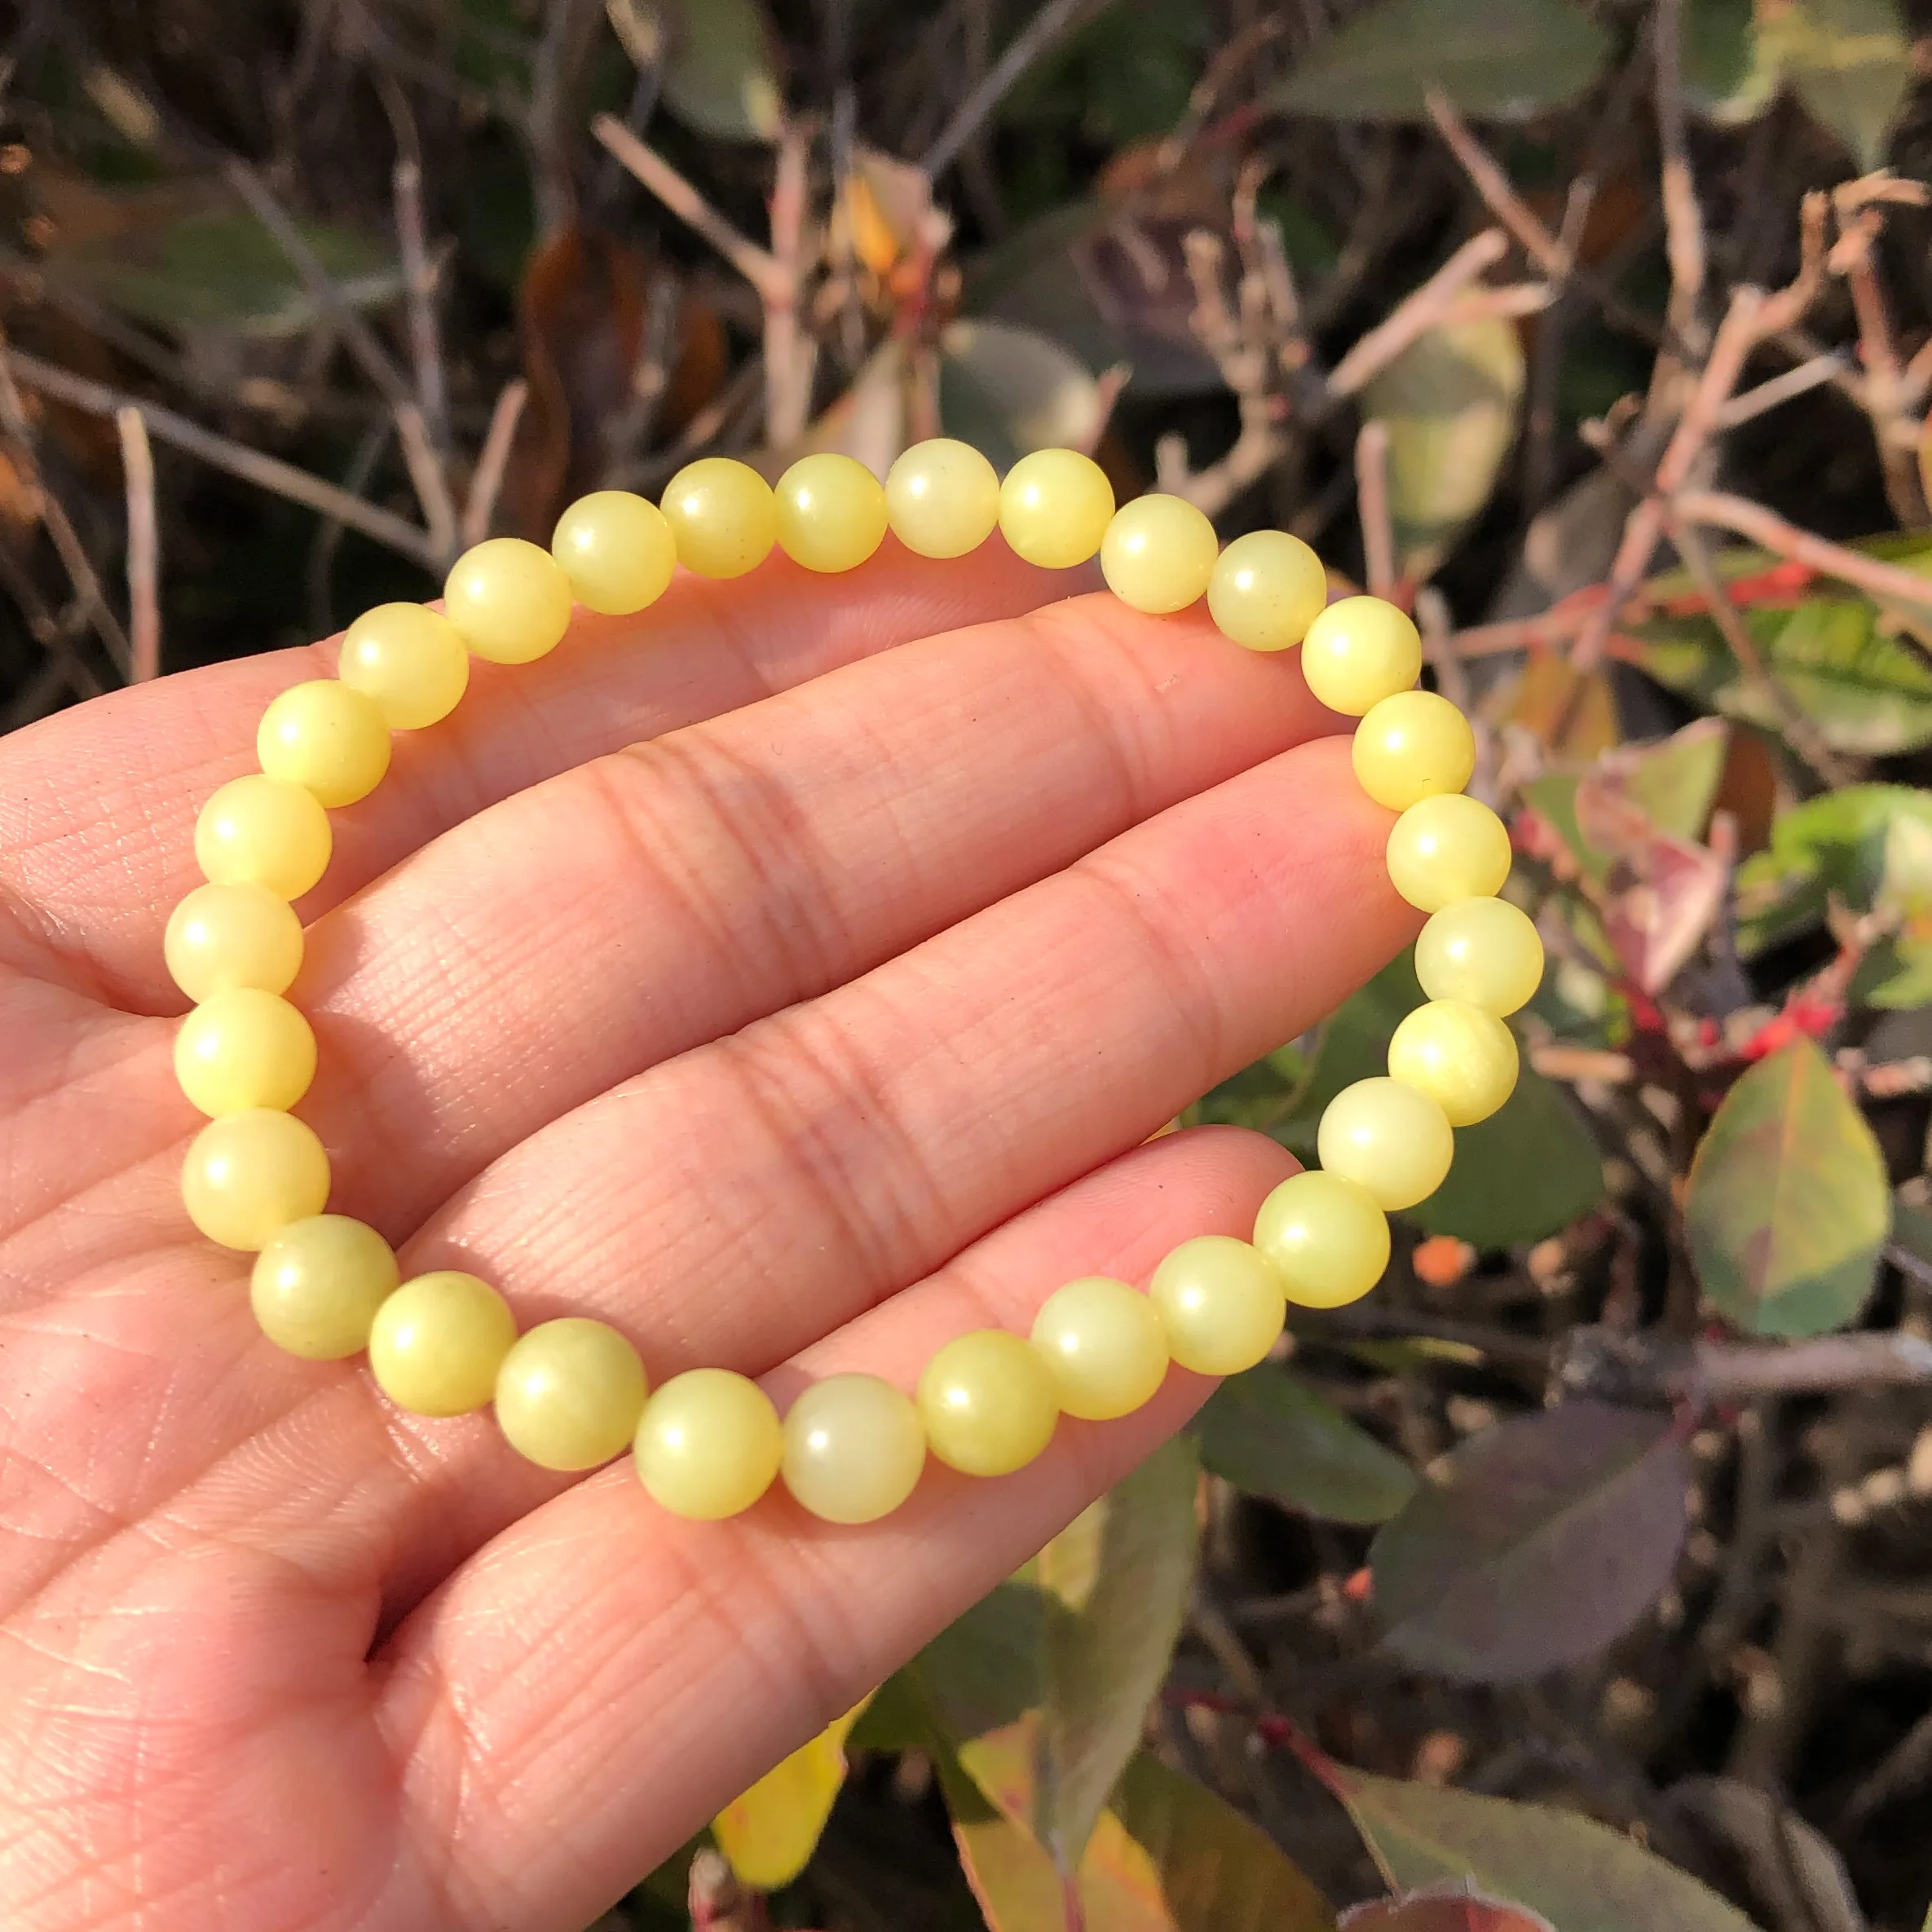 Lemon Jade and Coral Earrings